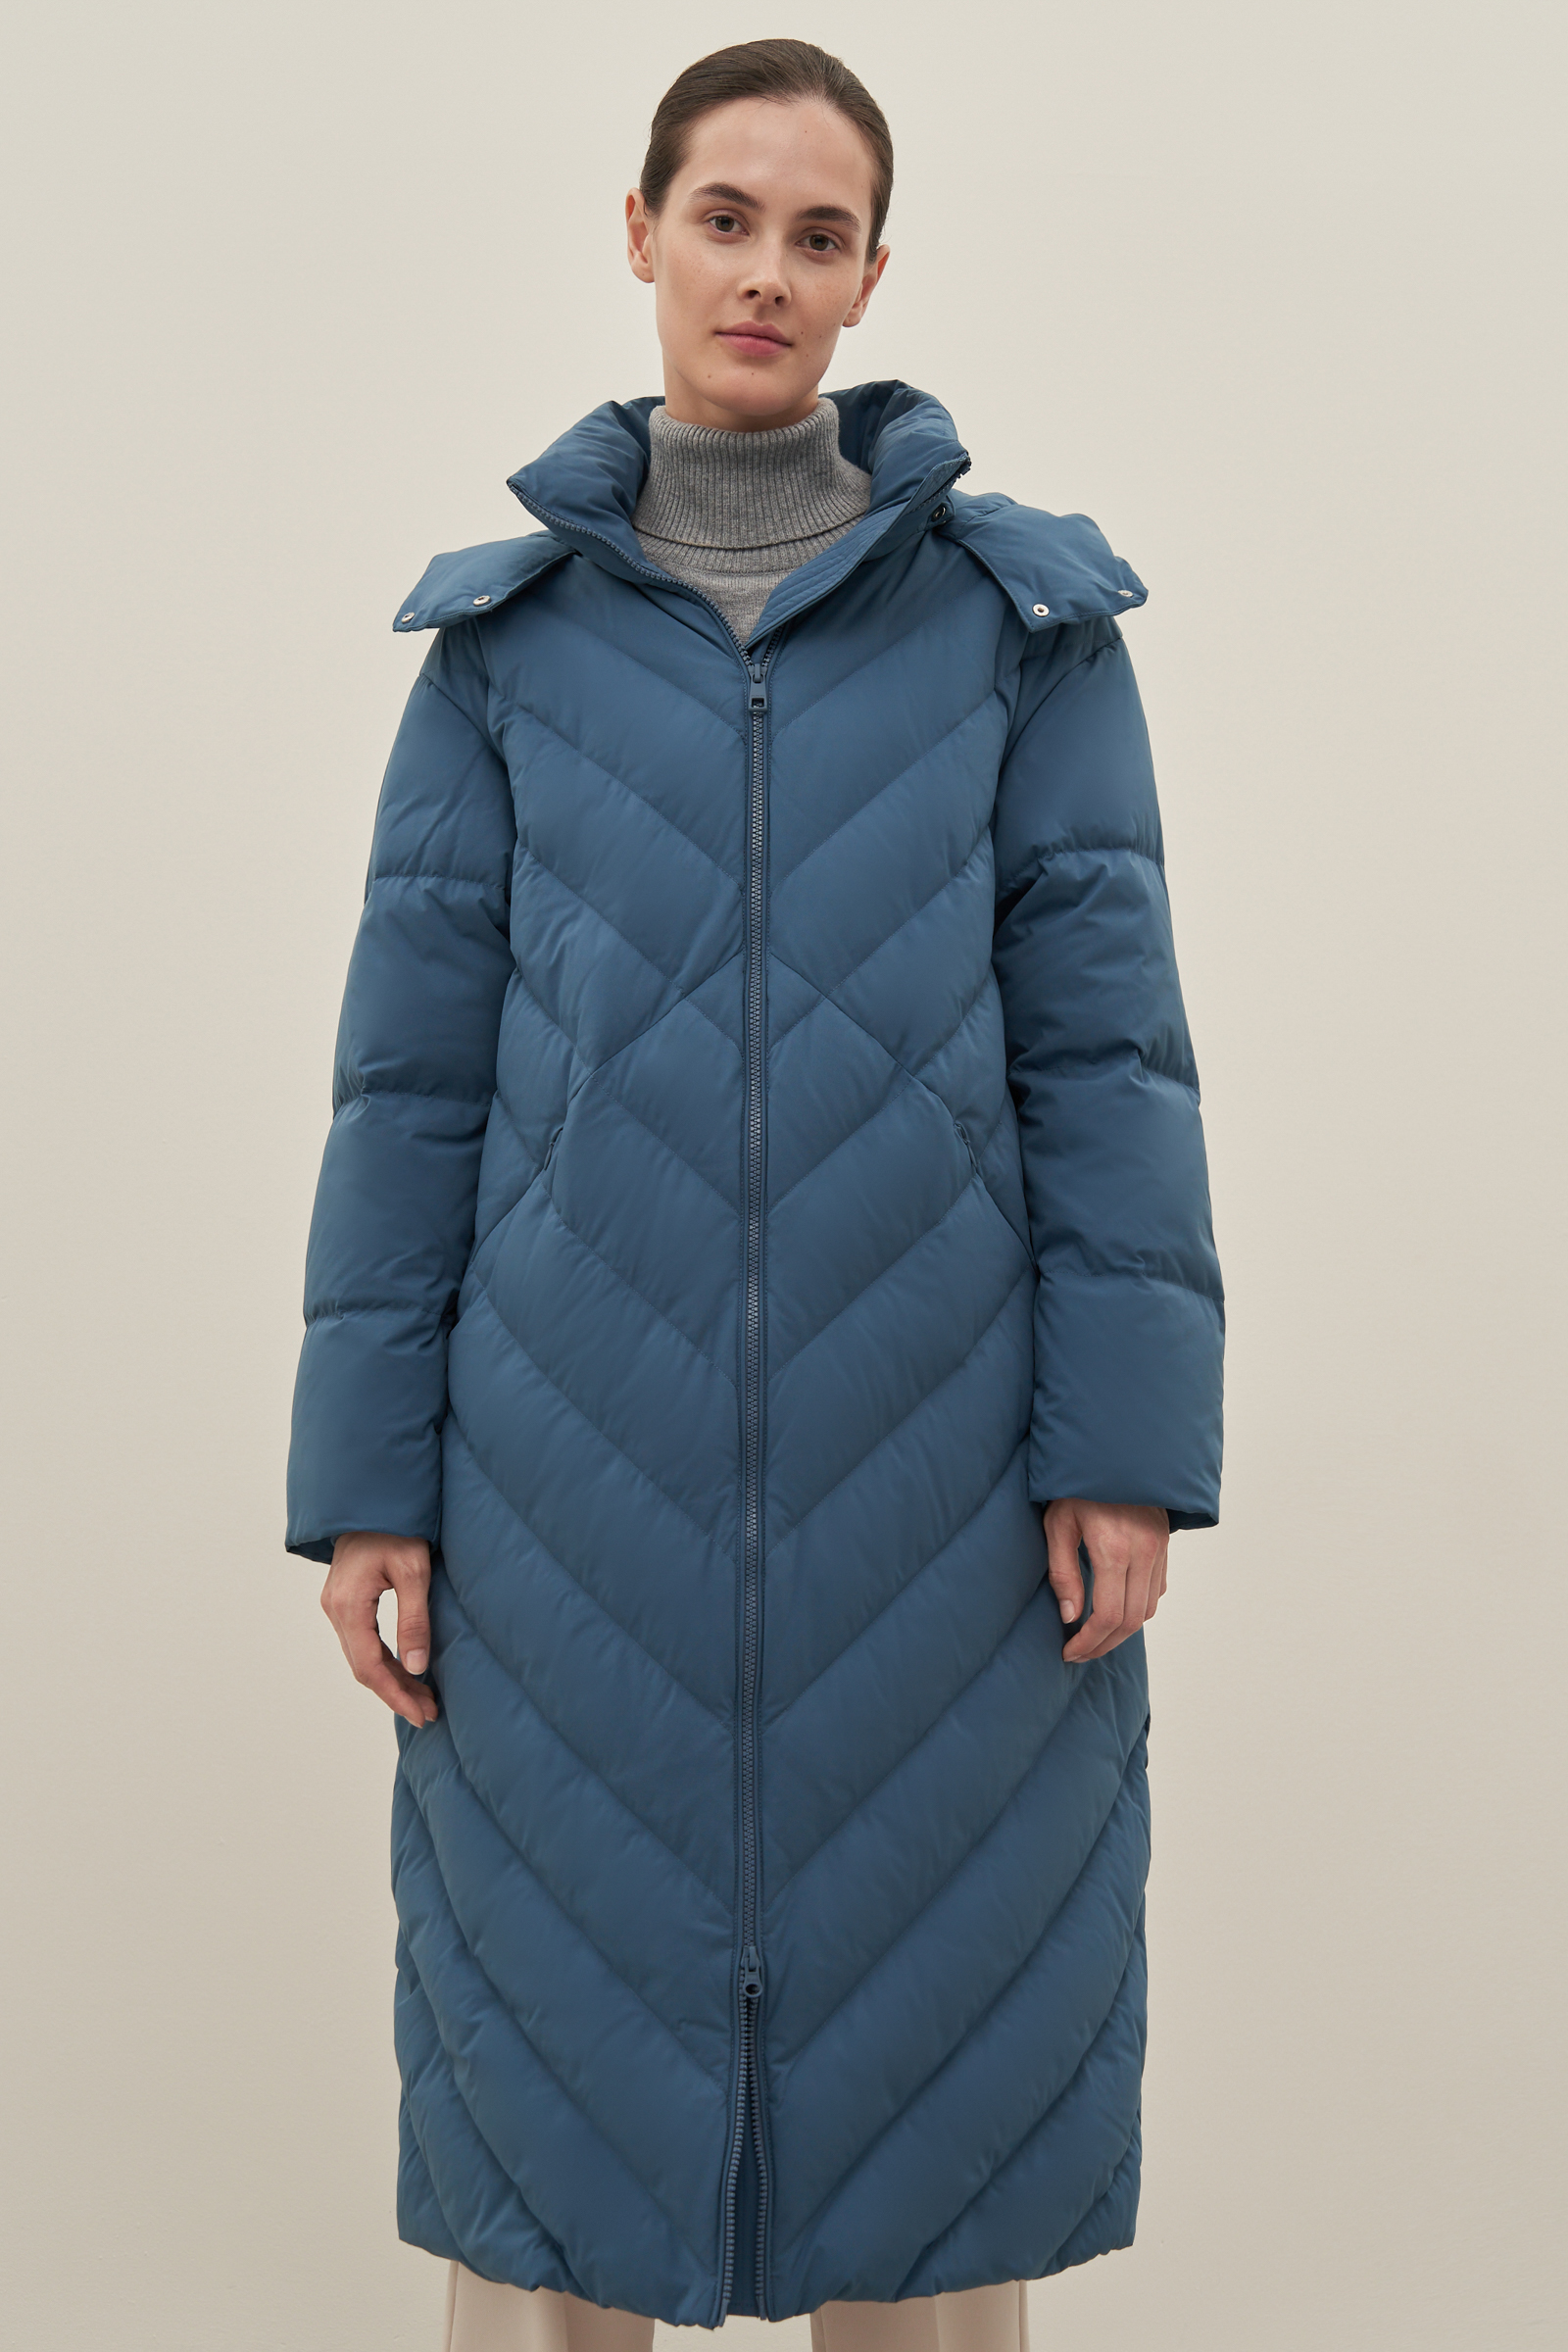 Пуховик-пальто женский Finn Flare FAD110101 синий XL